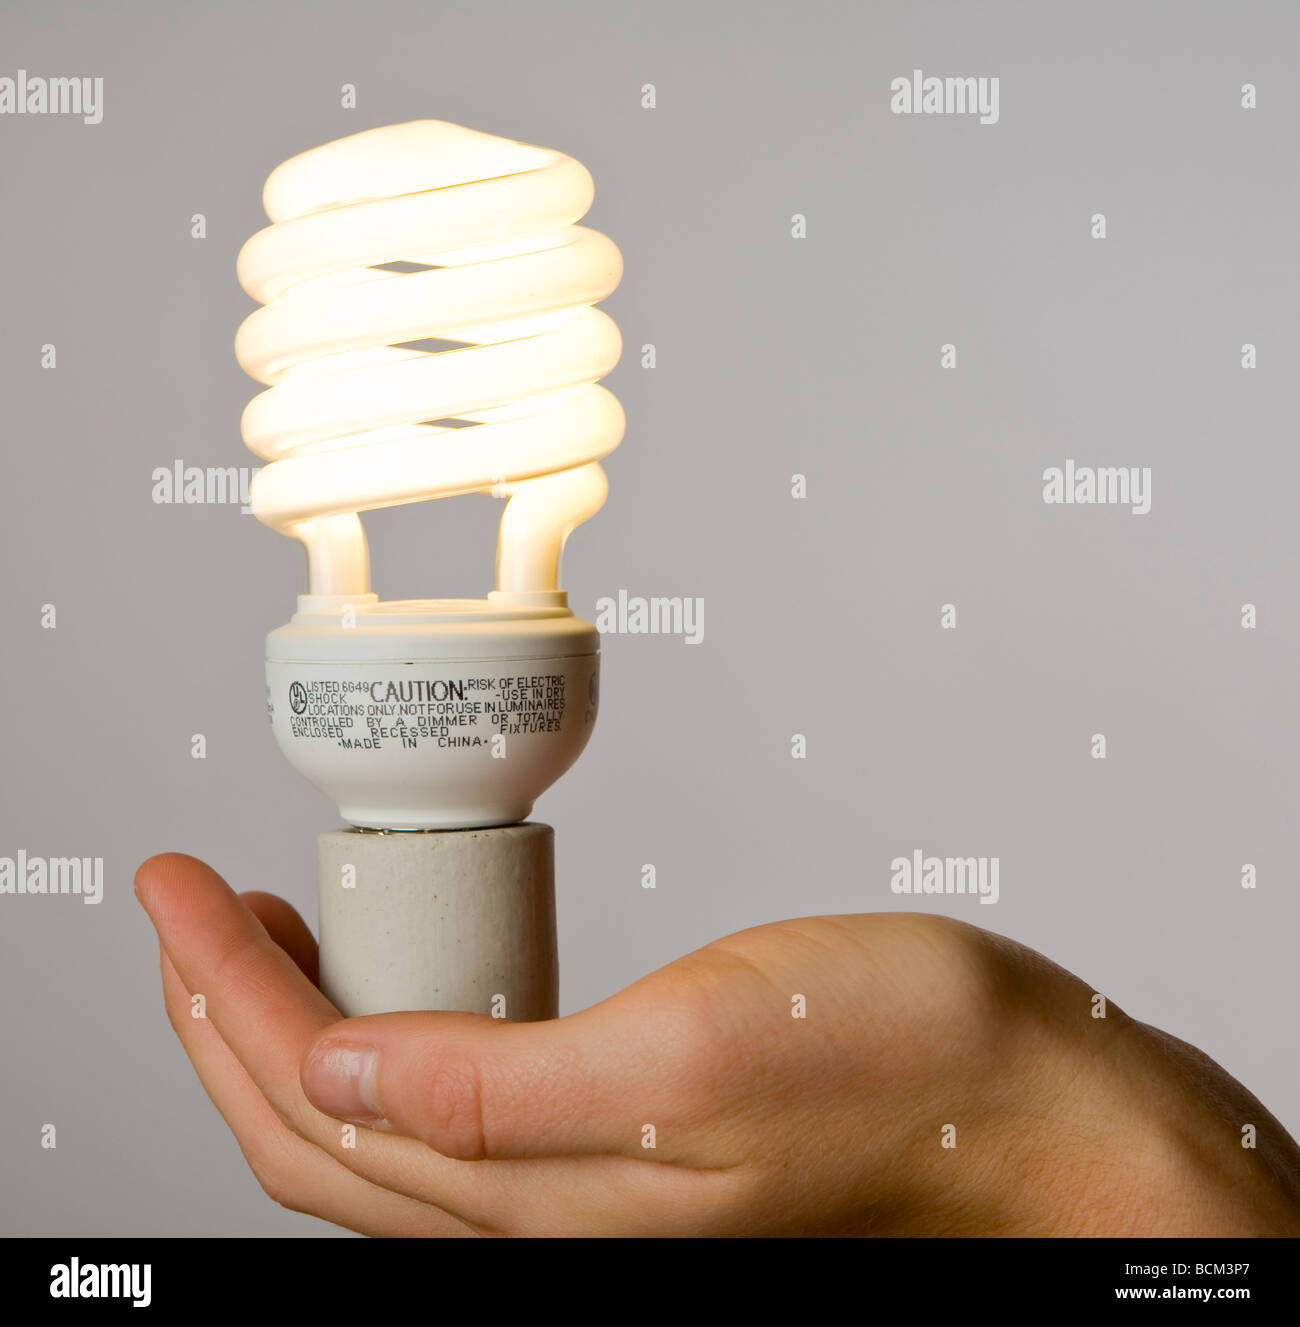 Mano che tiene una nuova energia efficiente compatto per lampade fluorescenti Foto Stock